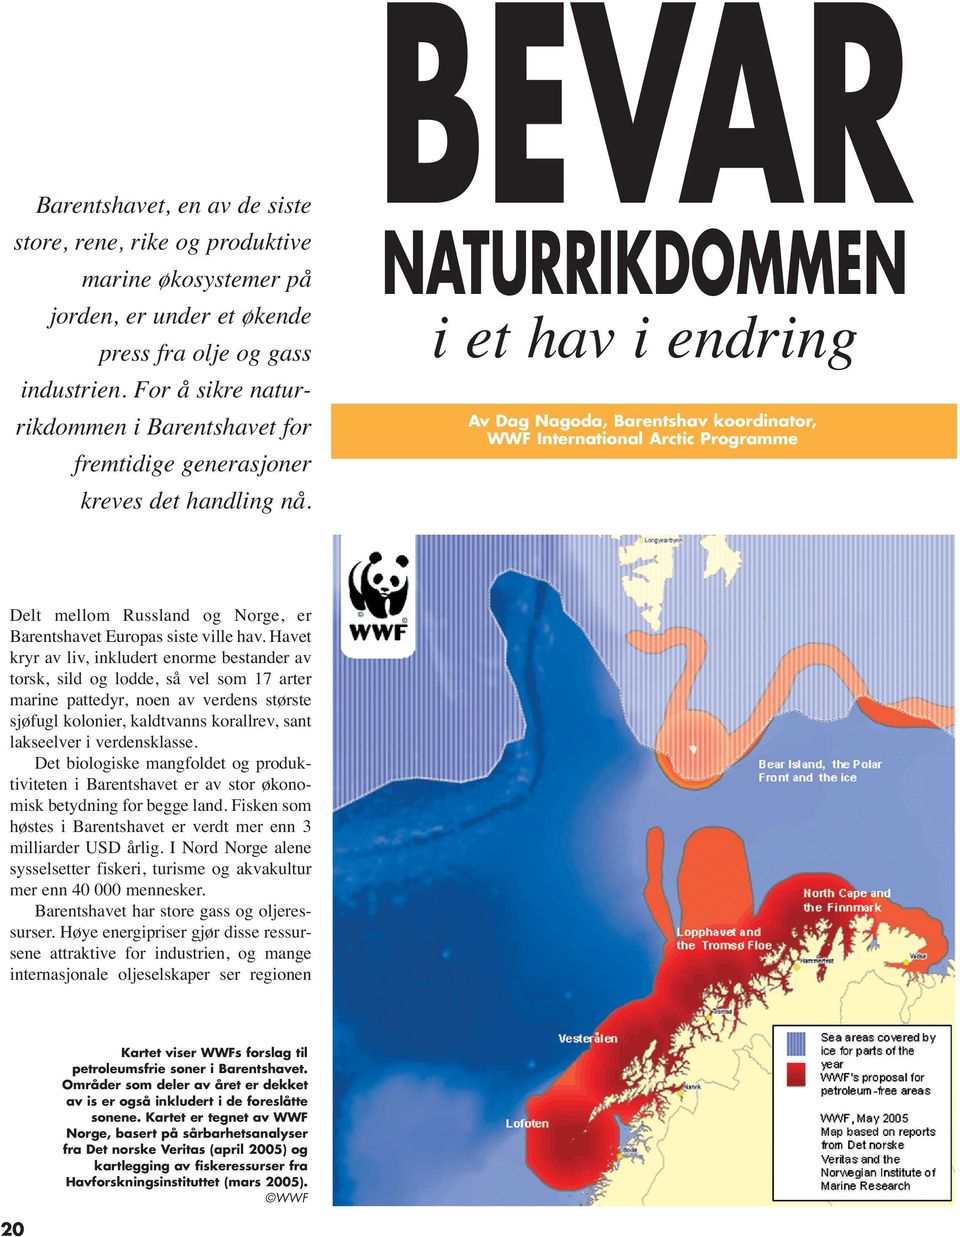 BEVAR NATURRIKDOMMEN i et hav i endring Av Dag Nagoda, Barentshav koordinator, WWF International Arctic Programme Delt mellom Russland og Norge, er Barentshavet Europas siste ville hav.